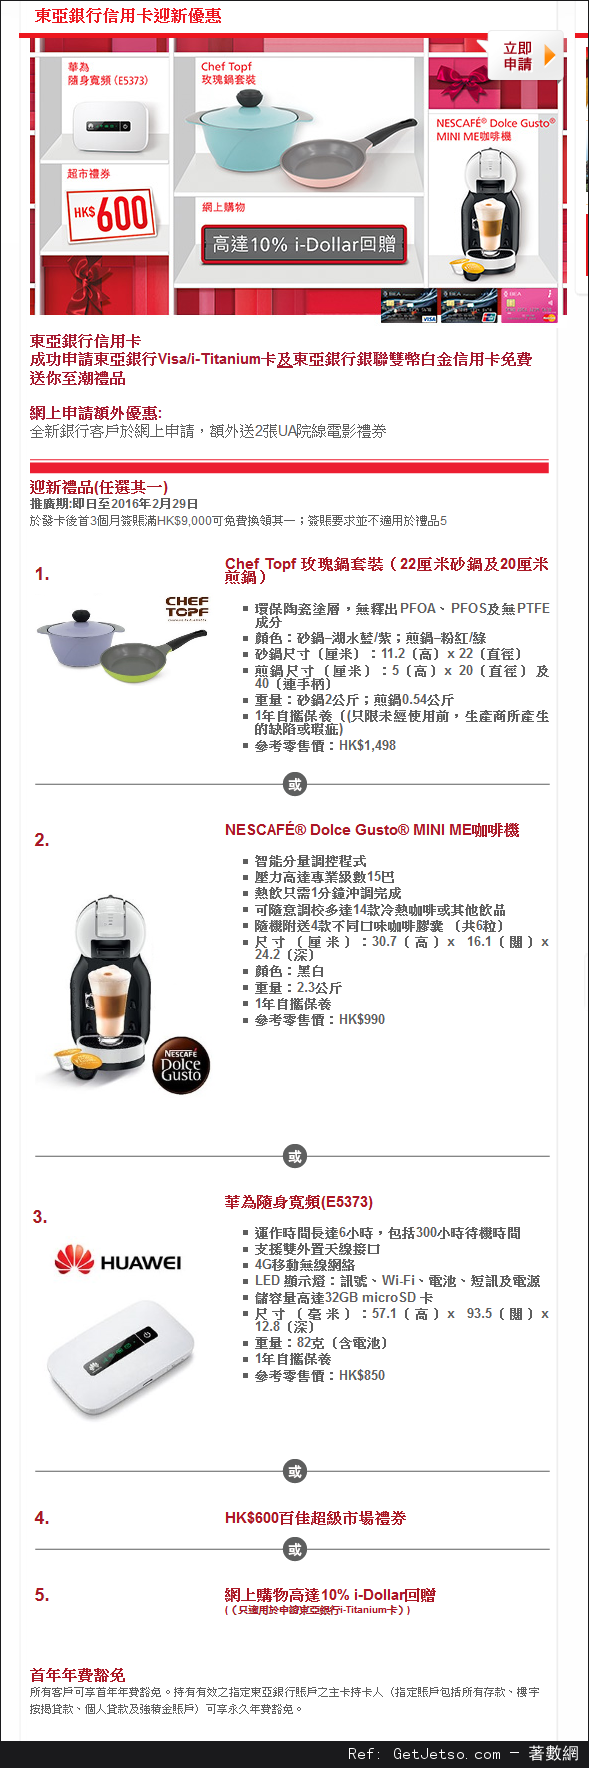 申請東亞信用卡送Chef Topf鍋/NESCAFE咖啡機/華為EC5373隨身寛頻/0禮券優惠(至16年2月29日)圖片1